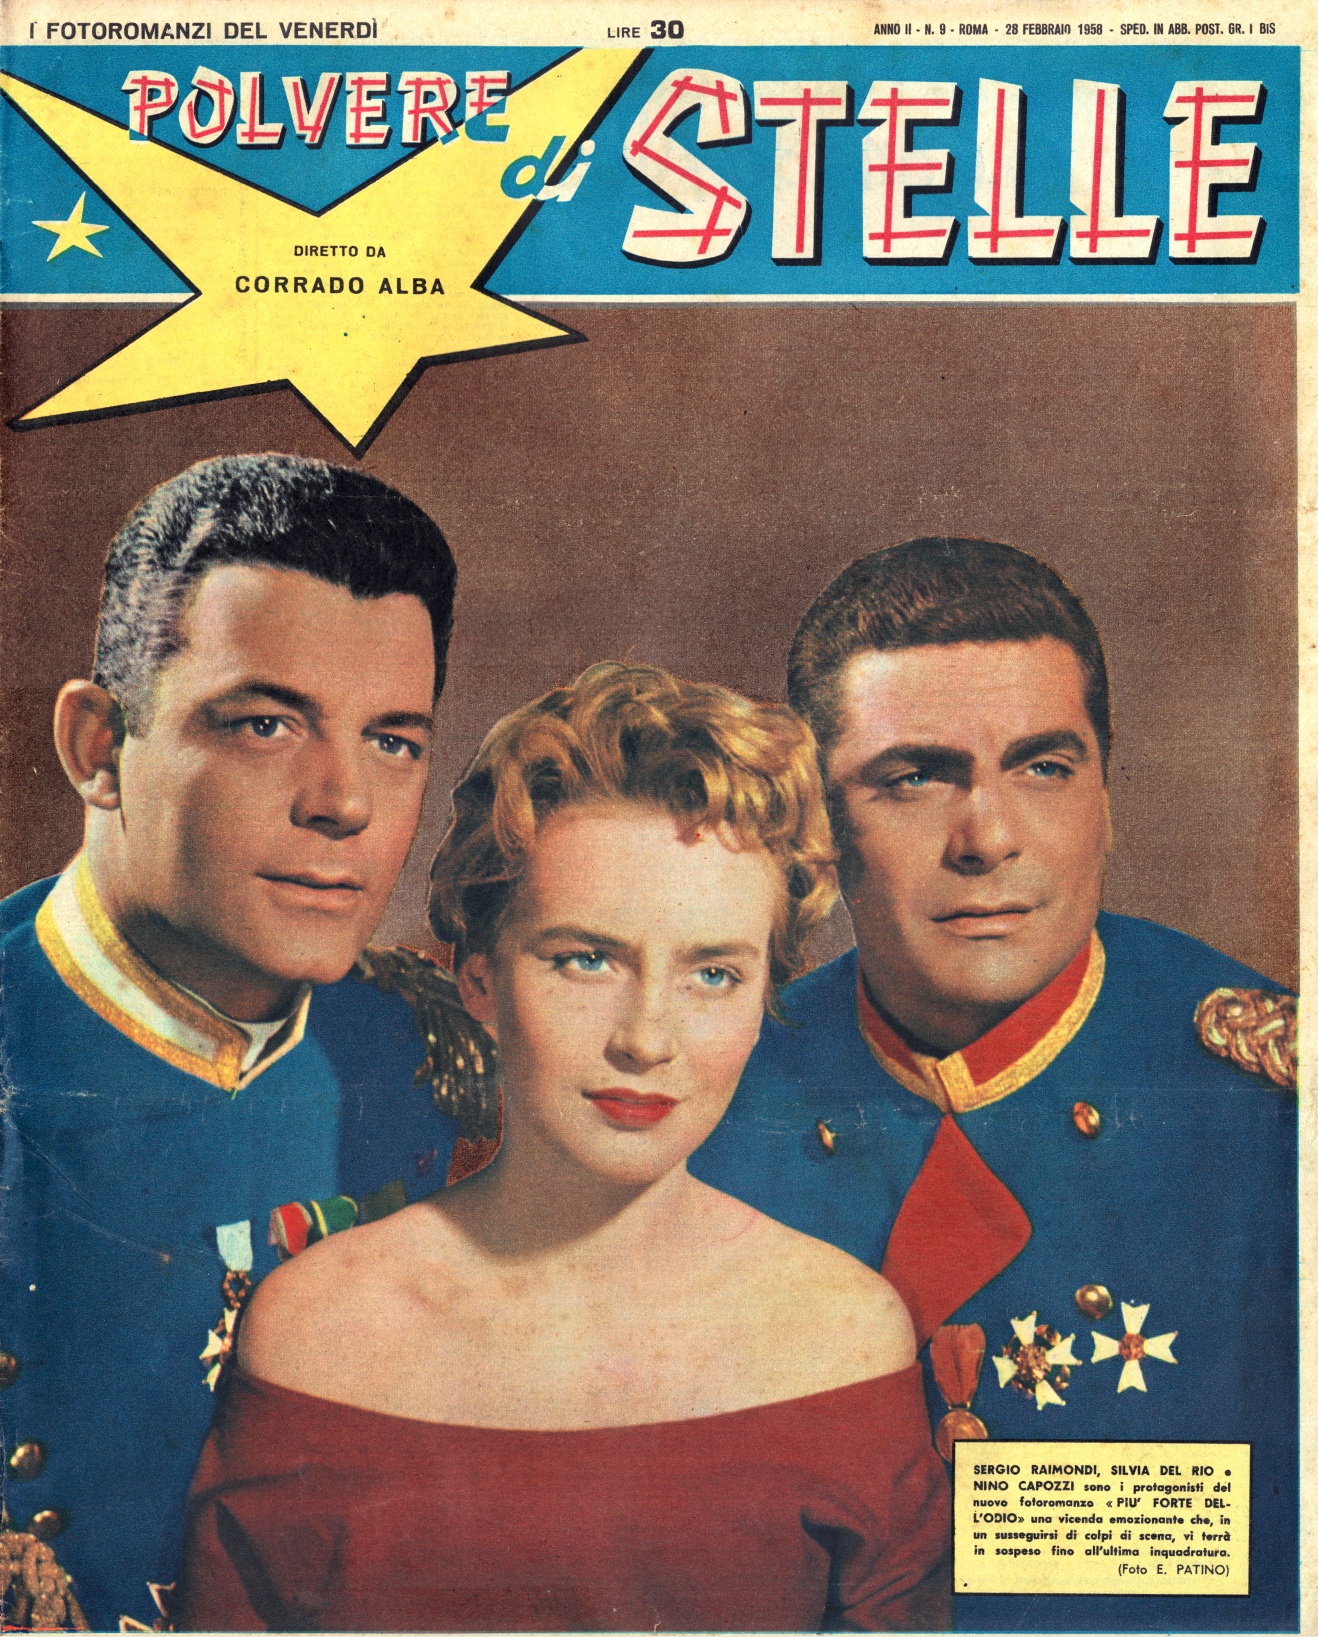 Polvere Di Stelle 28 February 1958 Cover.jpg